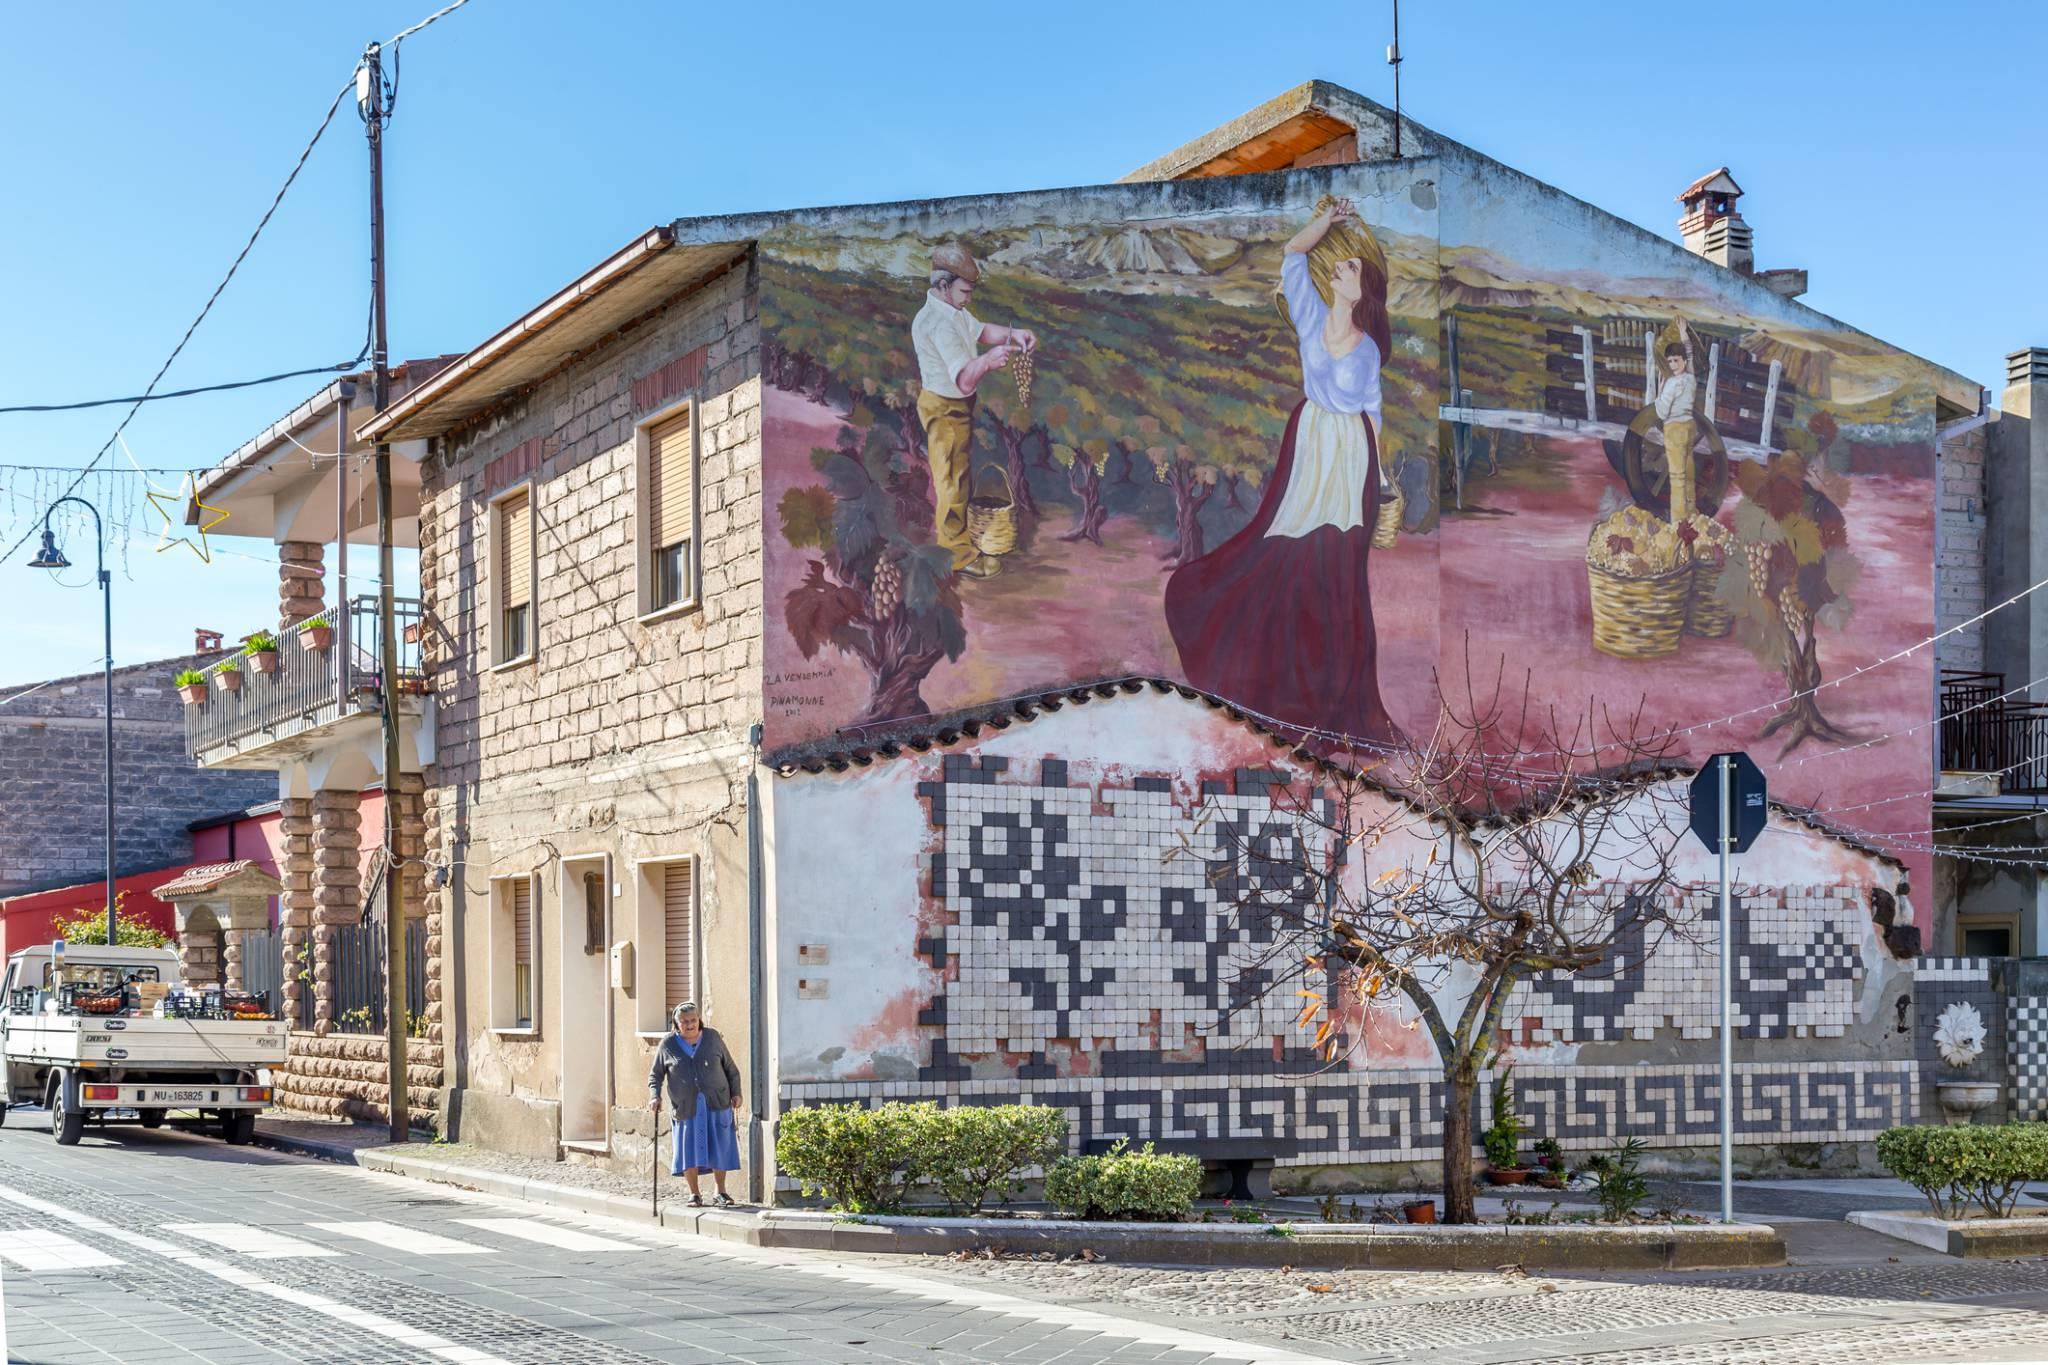  Mural zdobiący ścianę jednego z budynków w miejscowości Tinnura. (Fot. iStock)